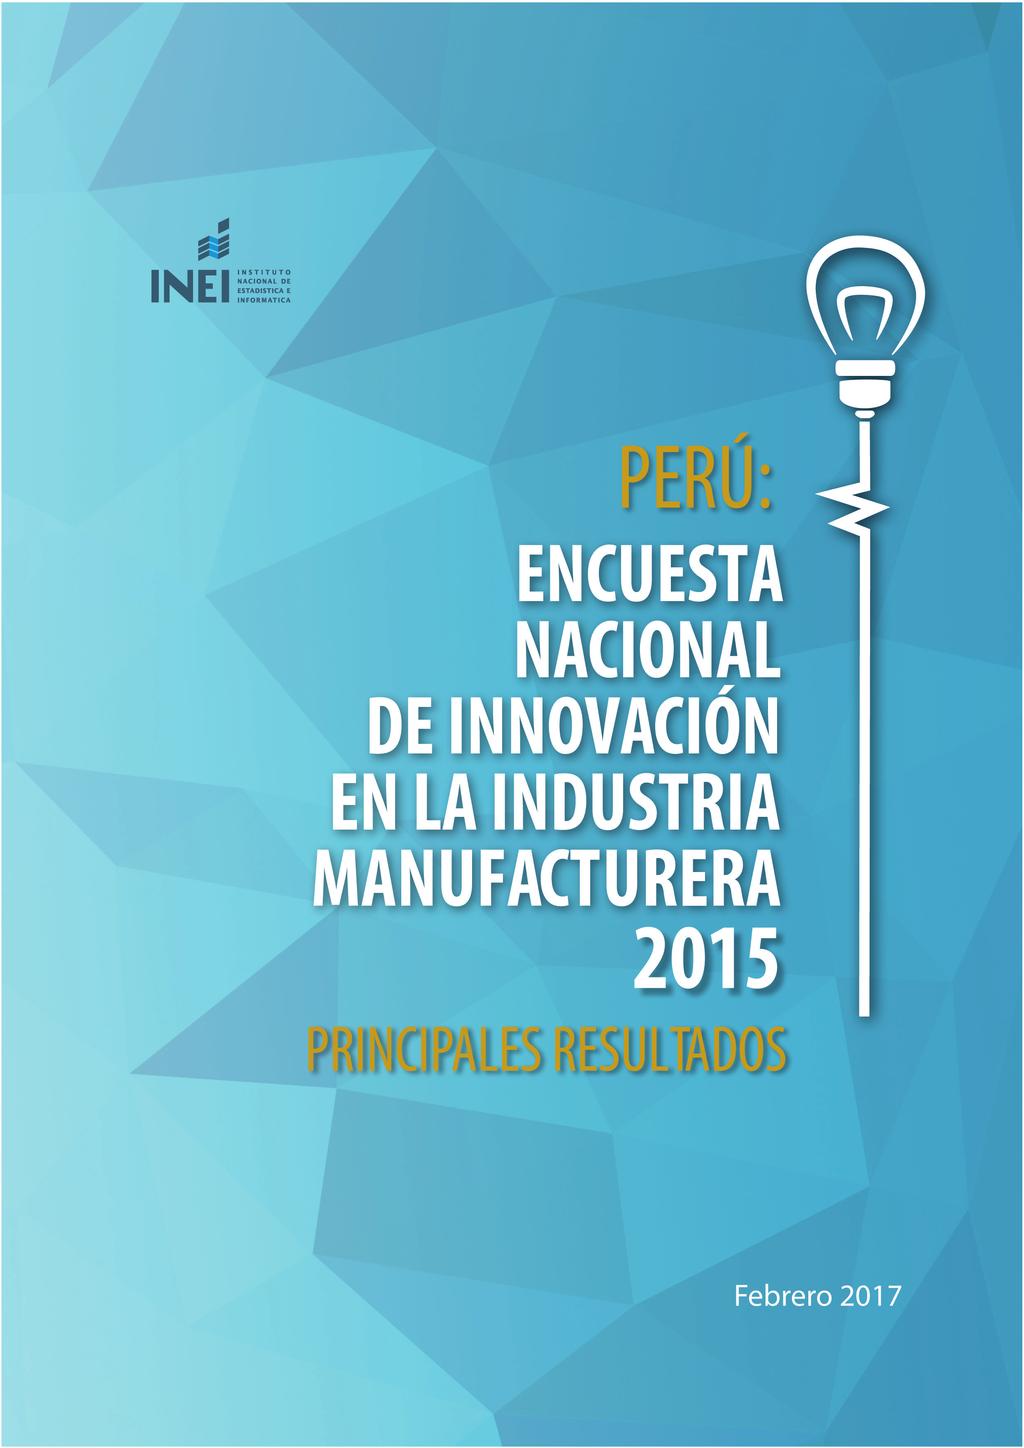 PERÚ: Encuesta Nacional de Innovación en la Industria